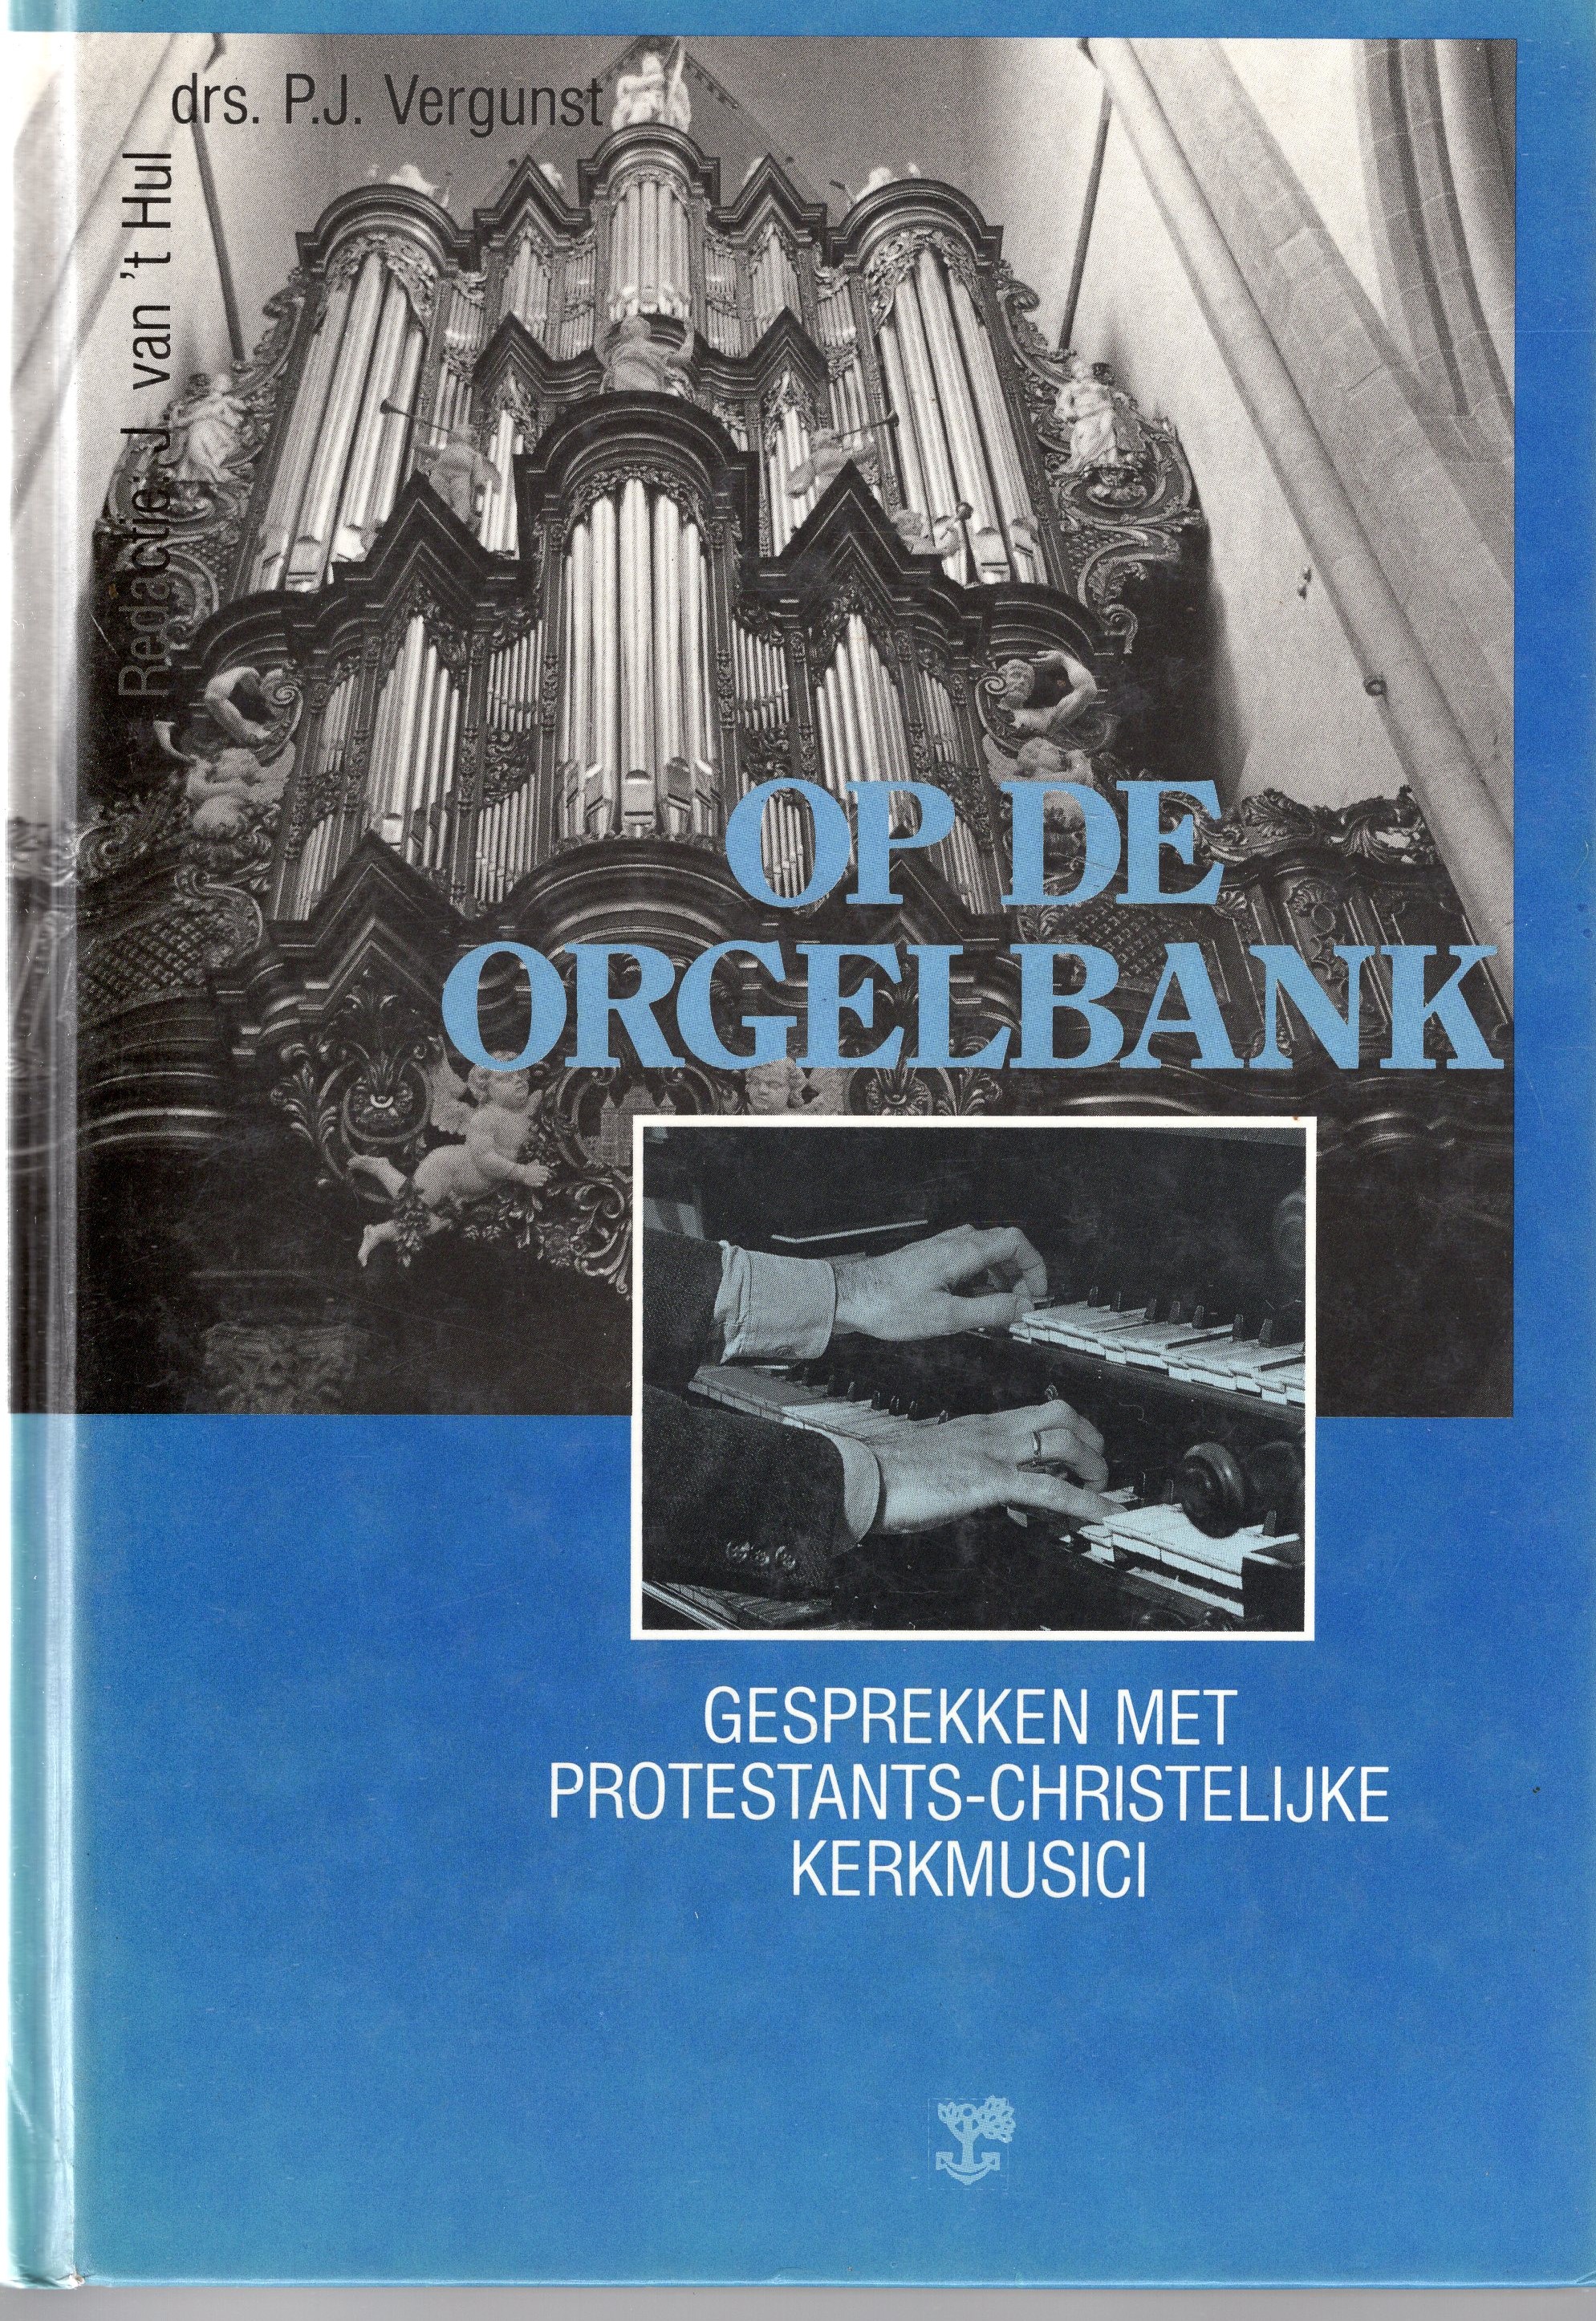 Hul, J. van 't (red.) - Op de orgelbank, Gesprekken met protestants-christelijke musici